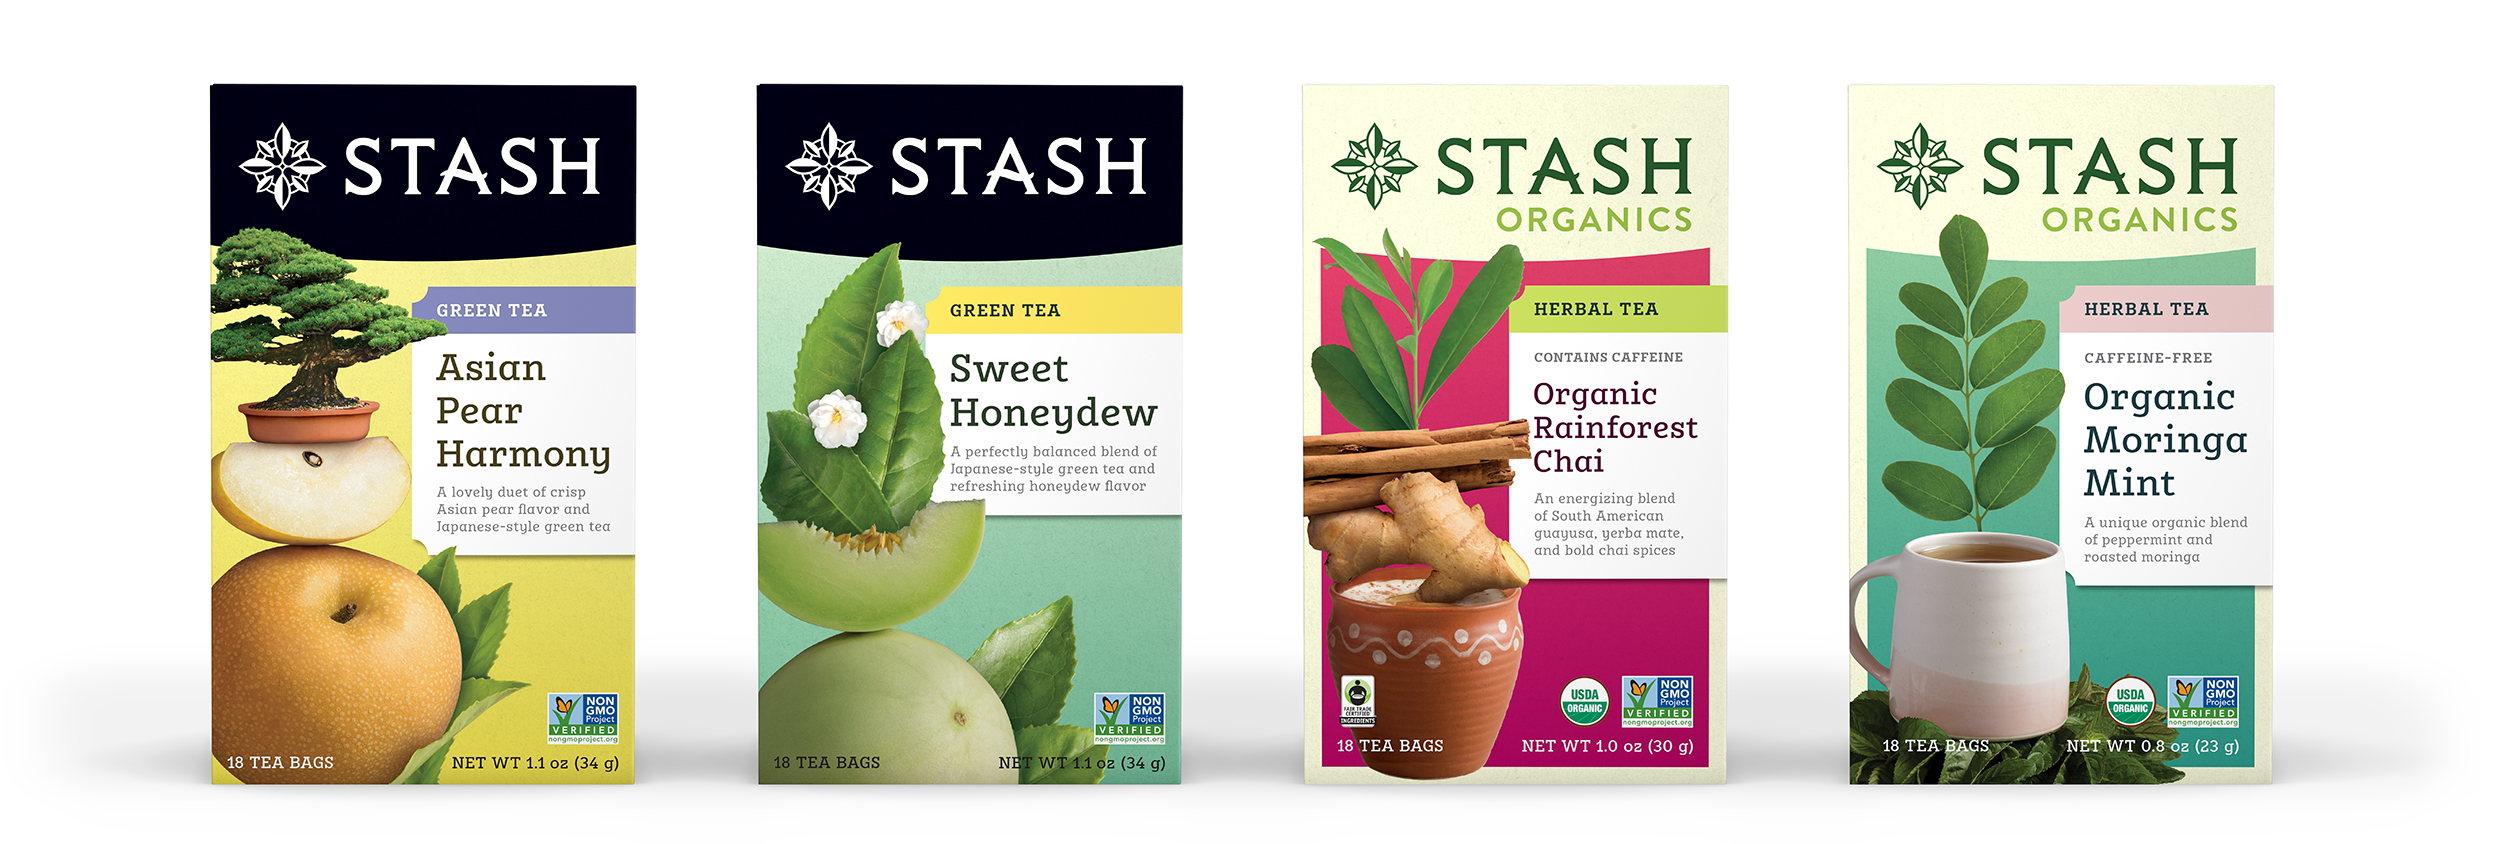 Stash Introduces 4 New Teas